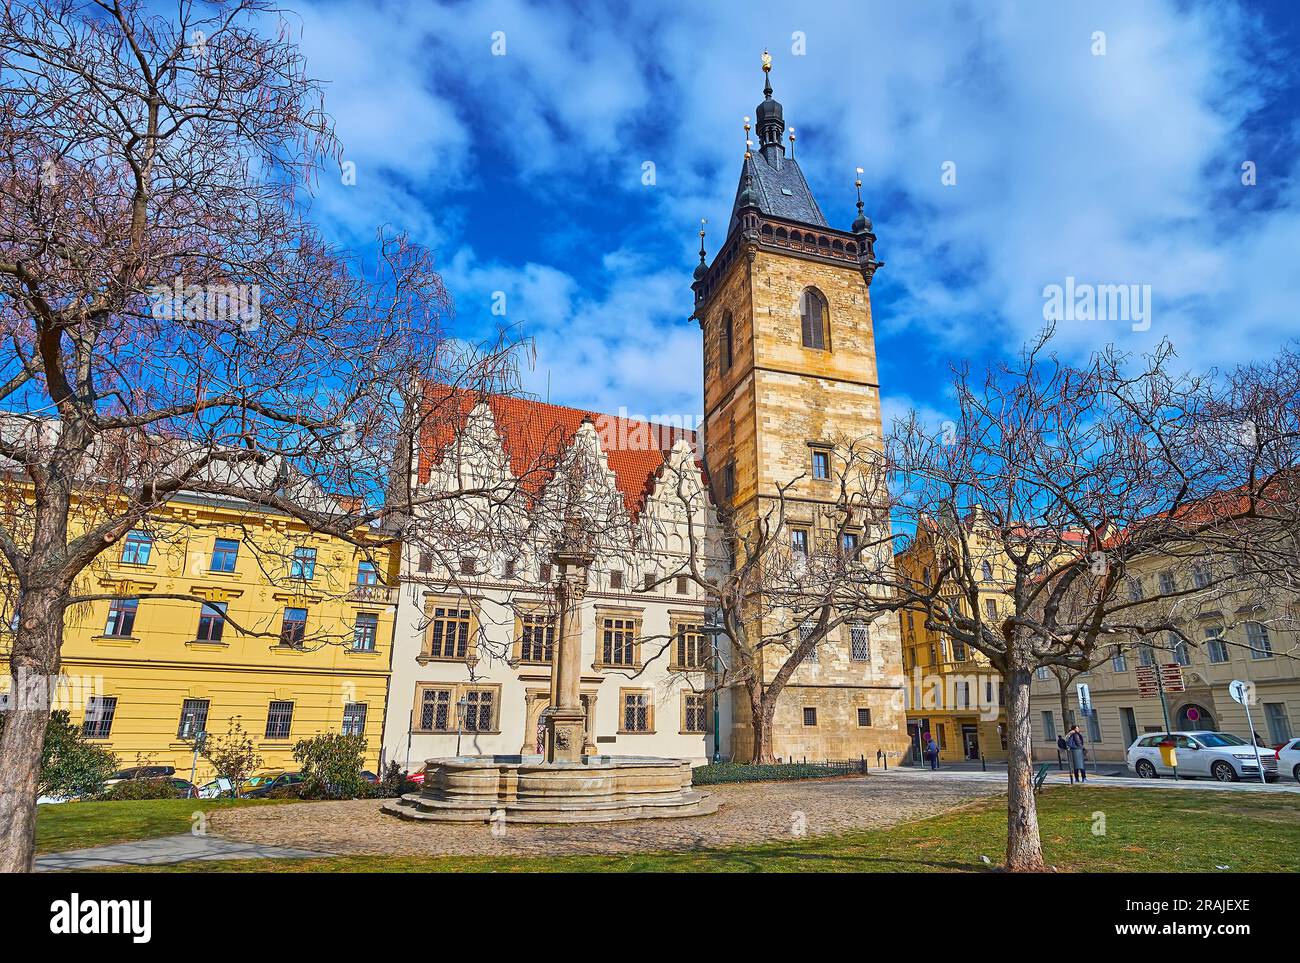 La place Charles avec la fontaine en pierre et la colonne de la peste contre le nouvel hôtel de ville avec une grande tour en pierre, Prague, Tchéquie Banque D'Images